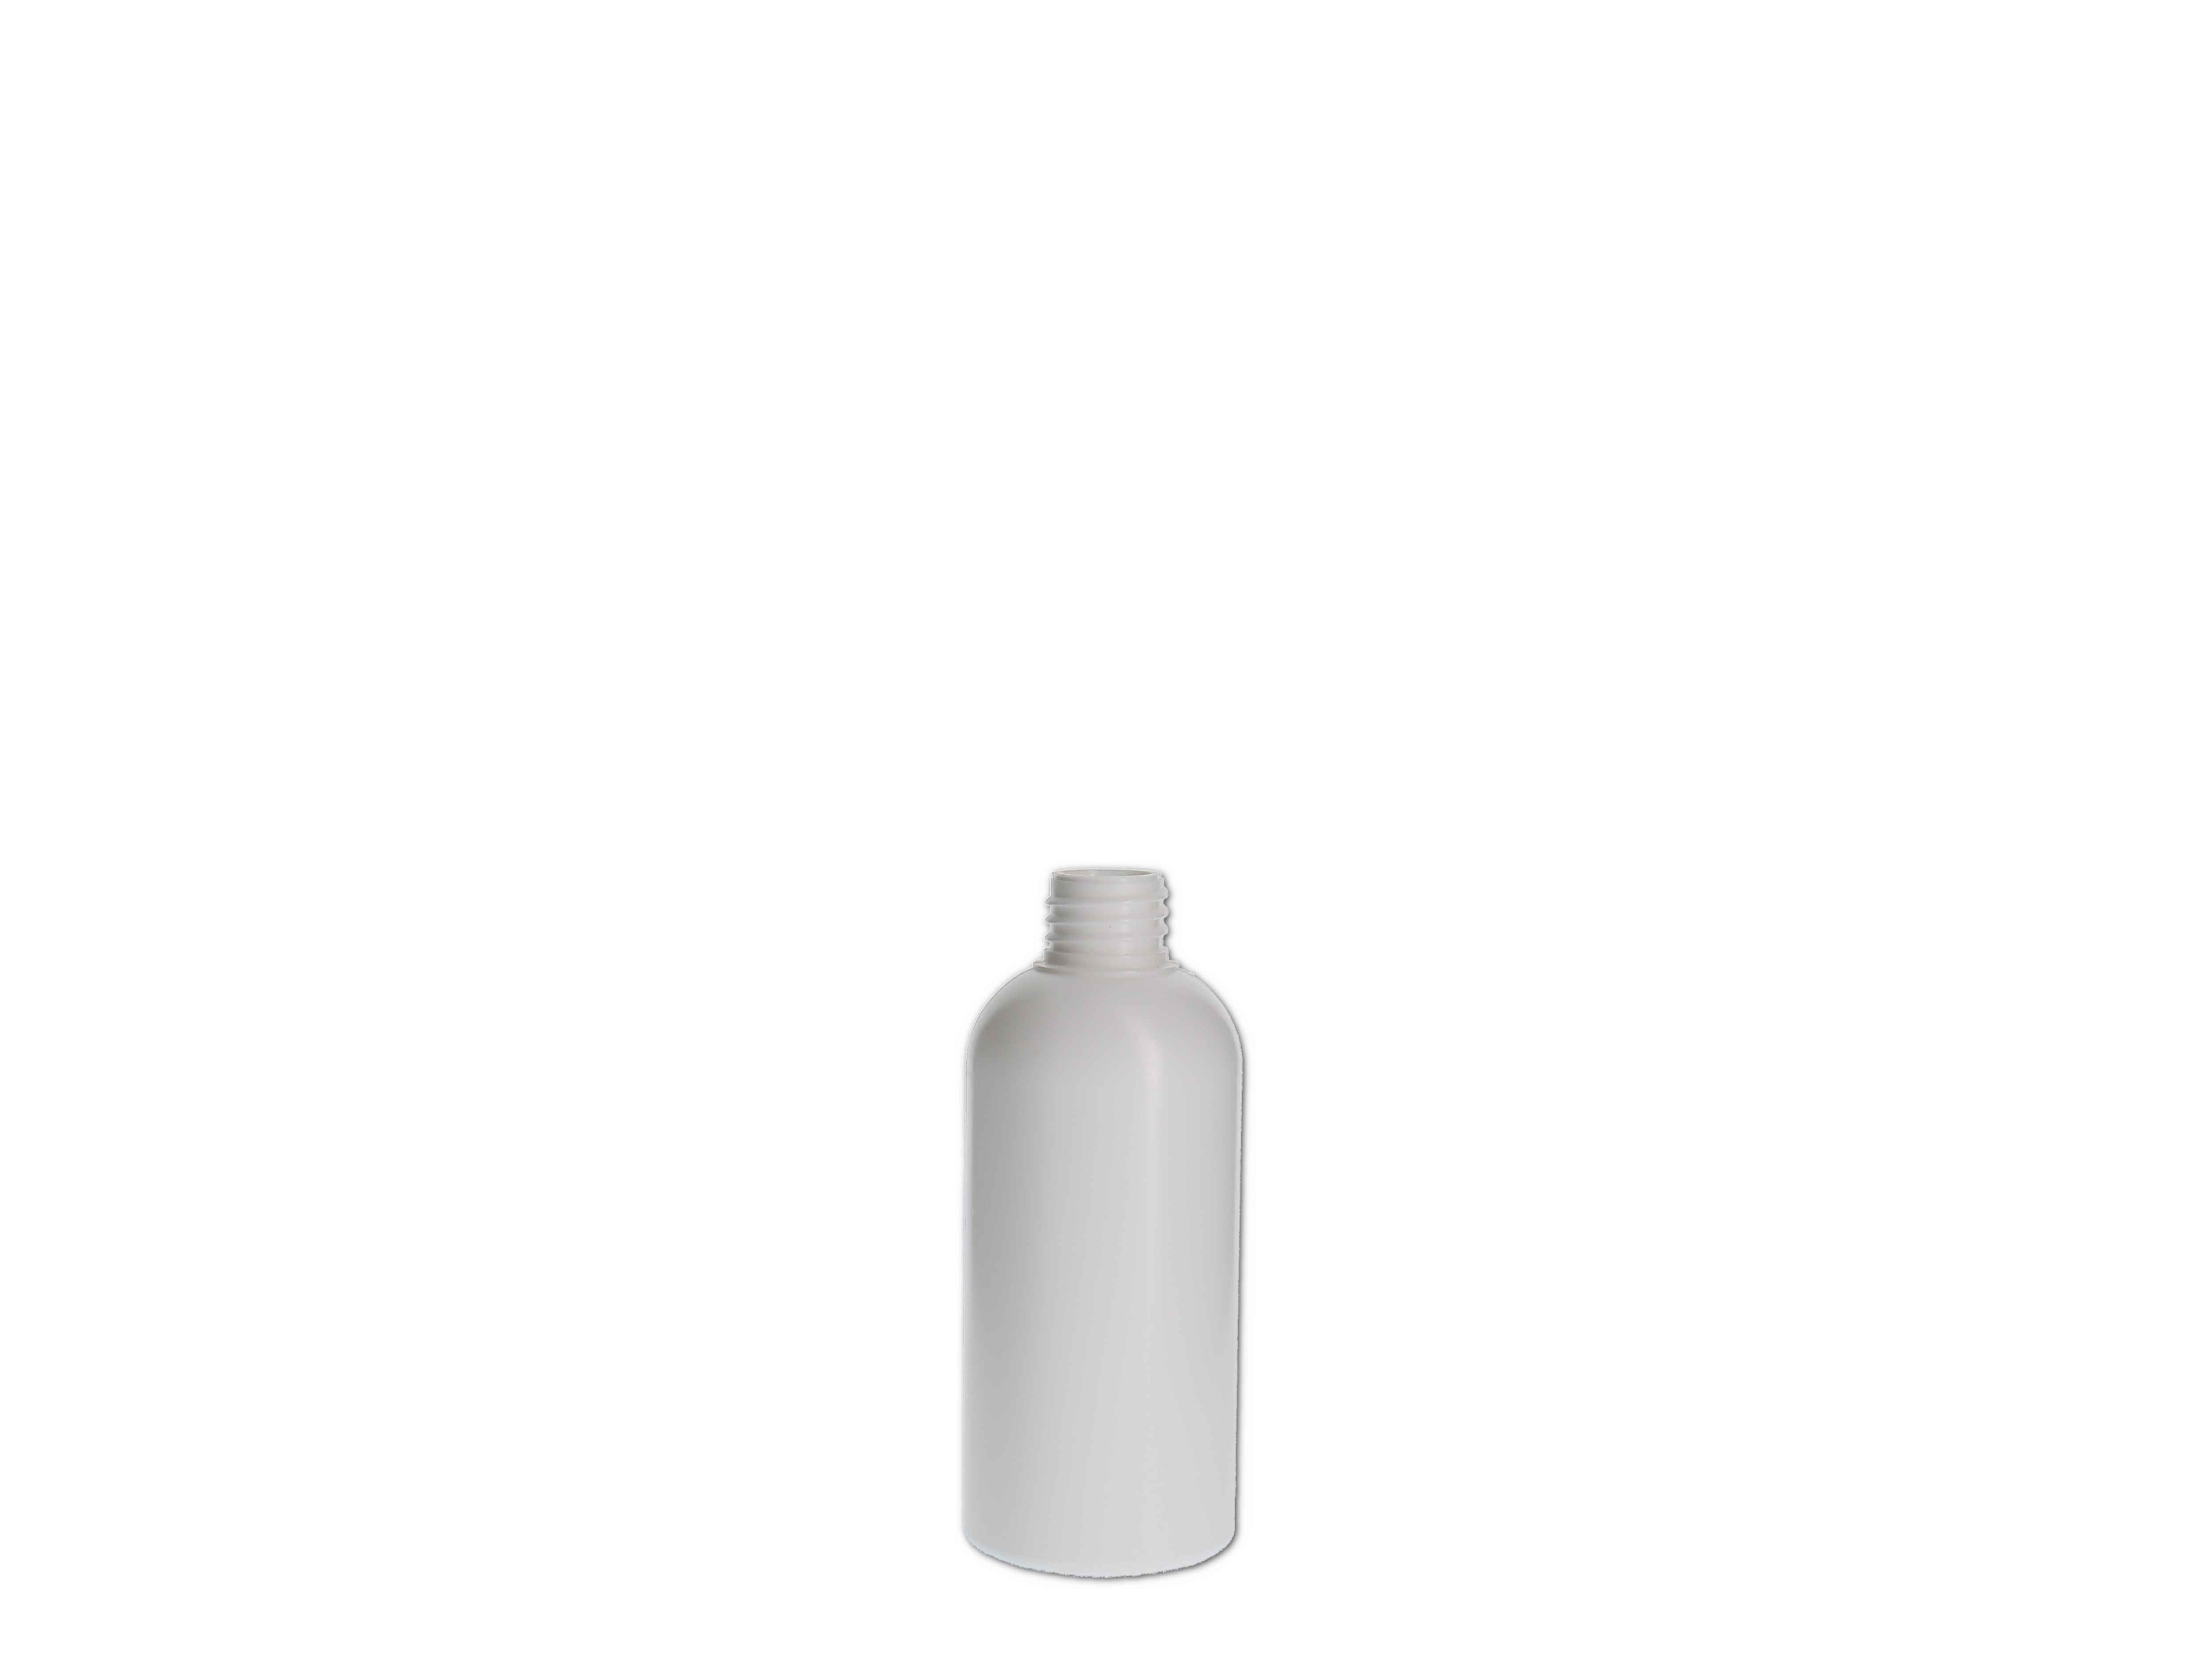    Kosmetikflasche, Kunststoff weiß, rund 100ml